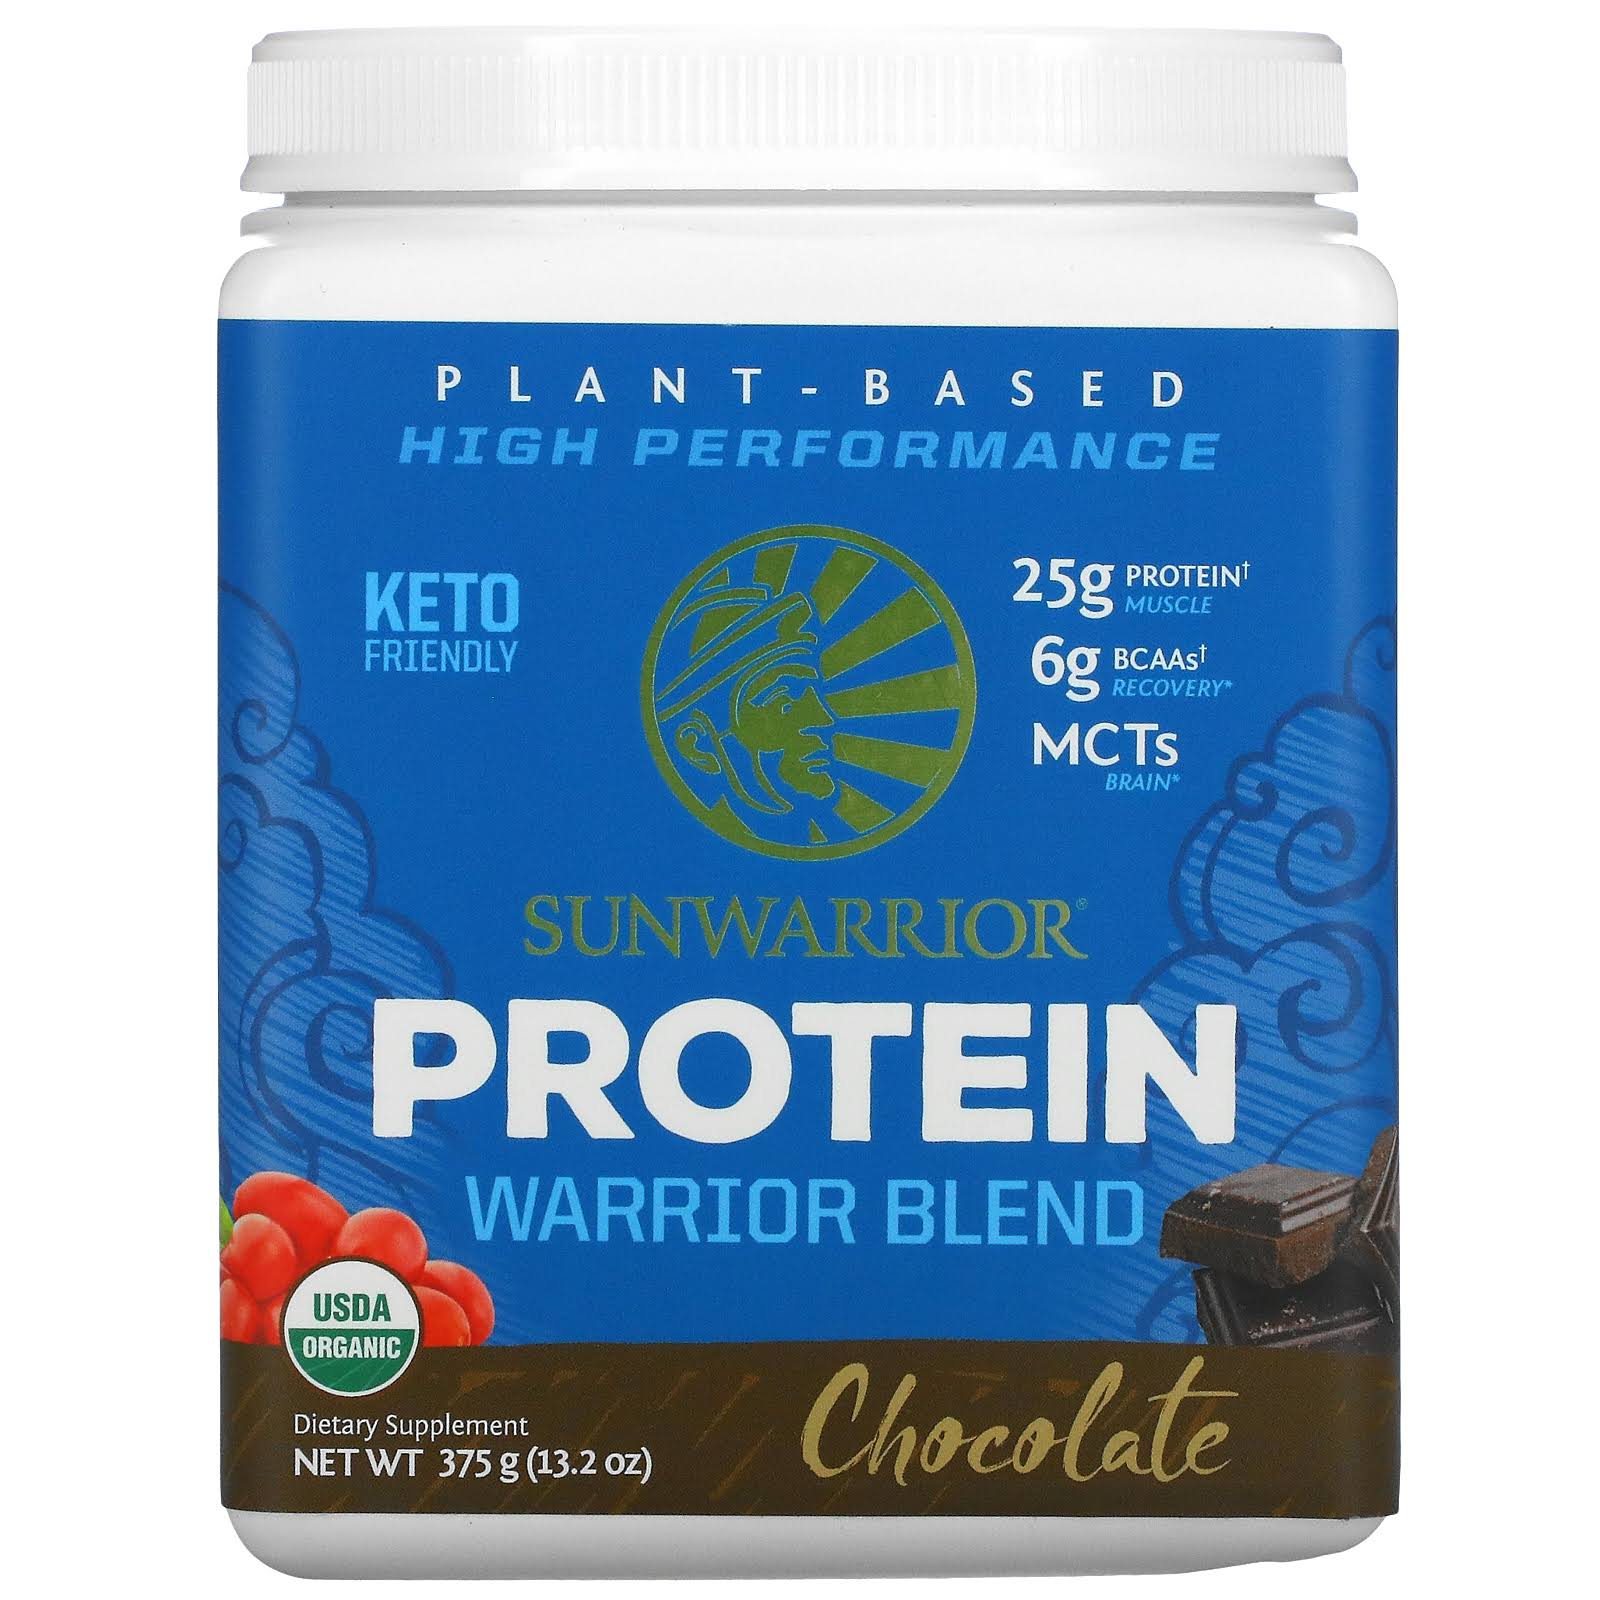 Sunwarrior Warrior Blend Raw Vegan Protein Supplement - Chocolate, 375g